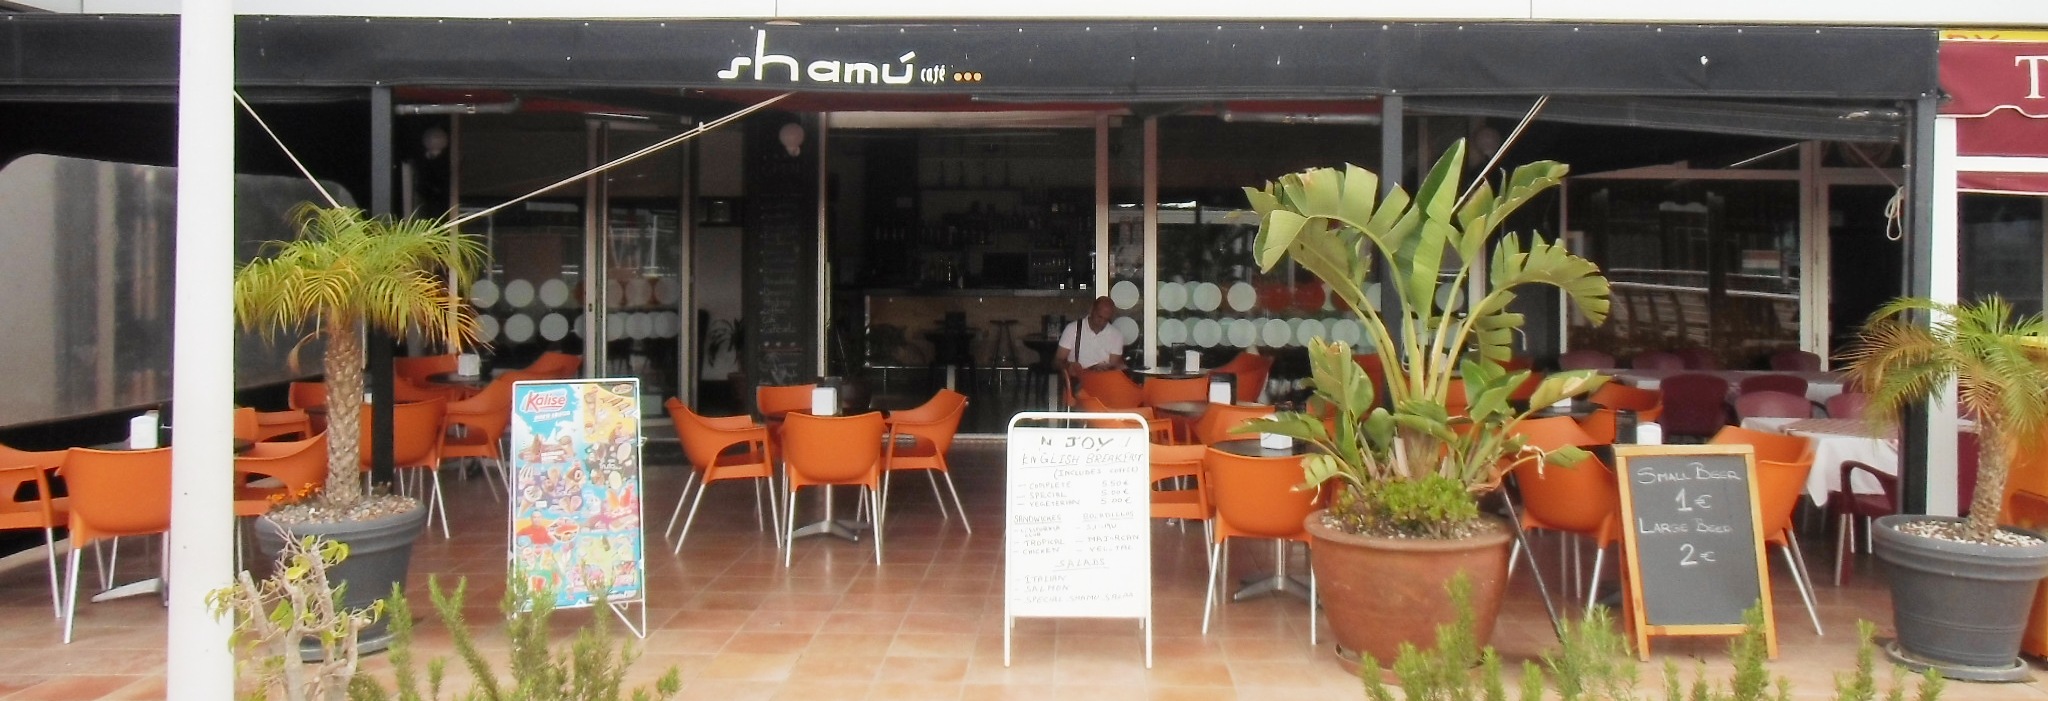 SHAMU CAFE